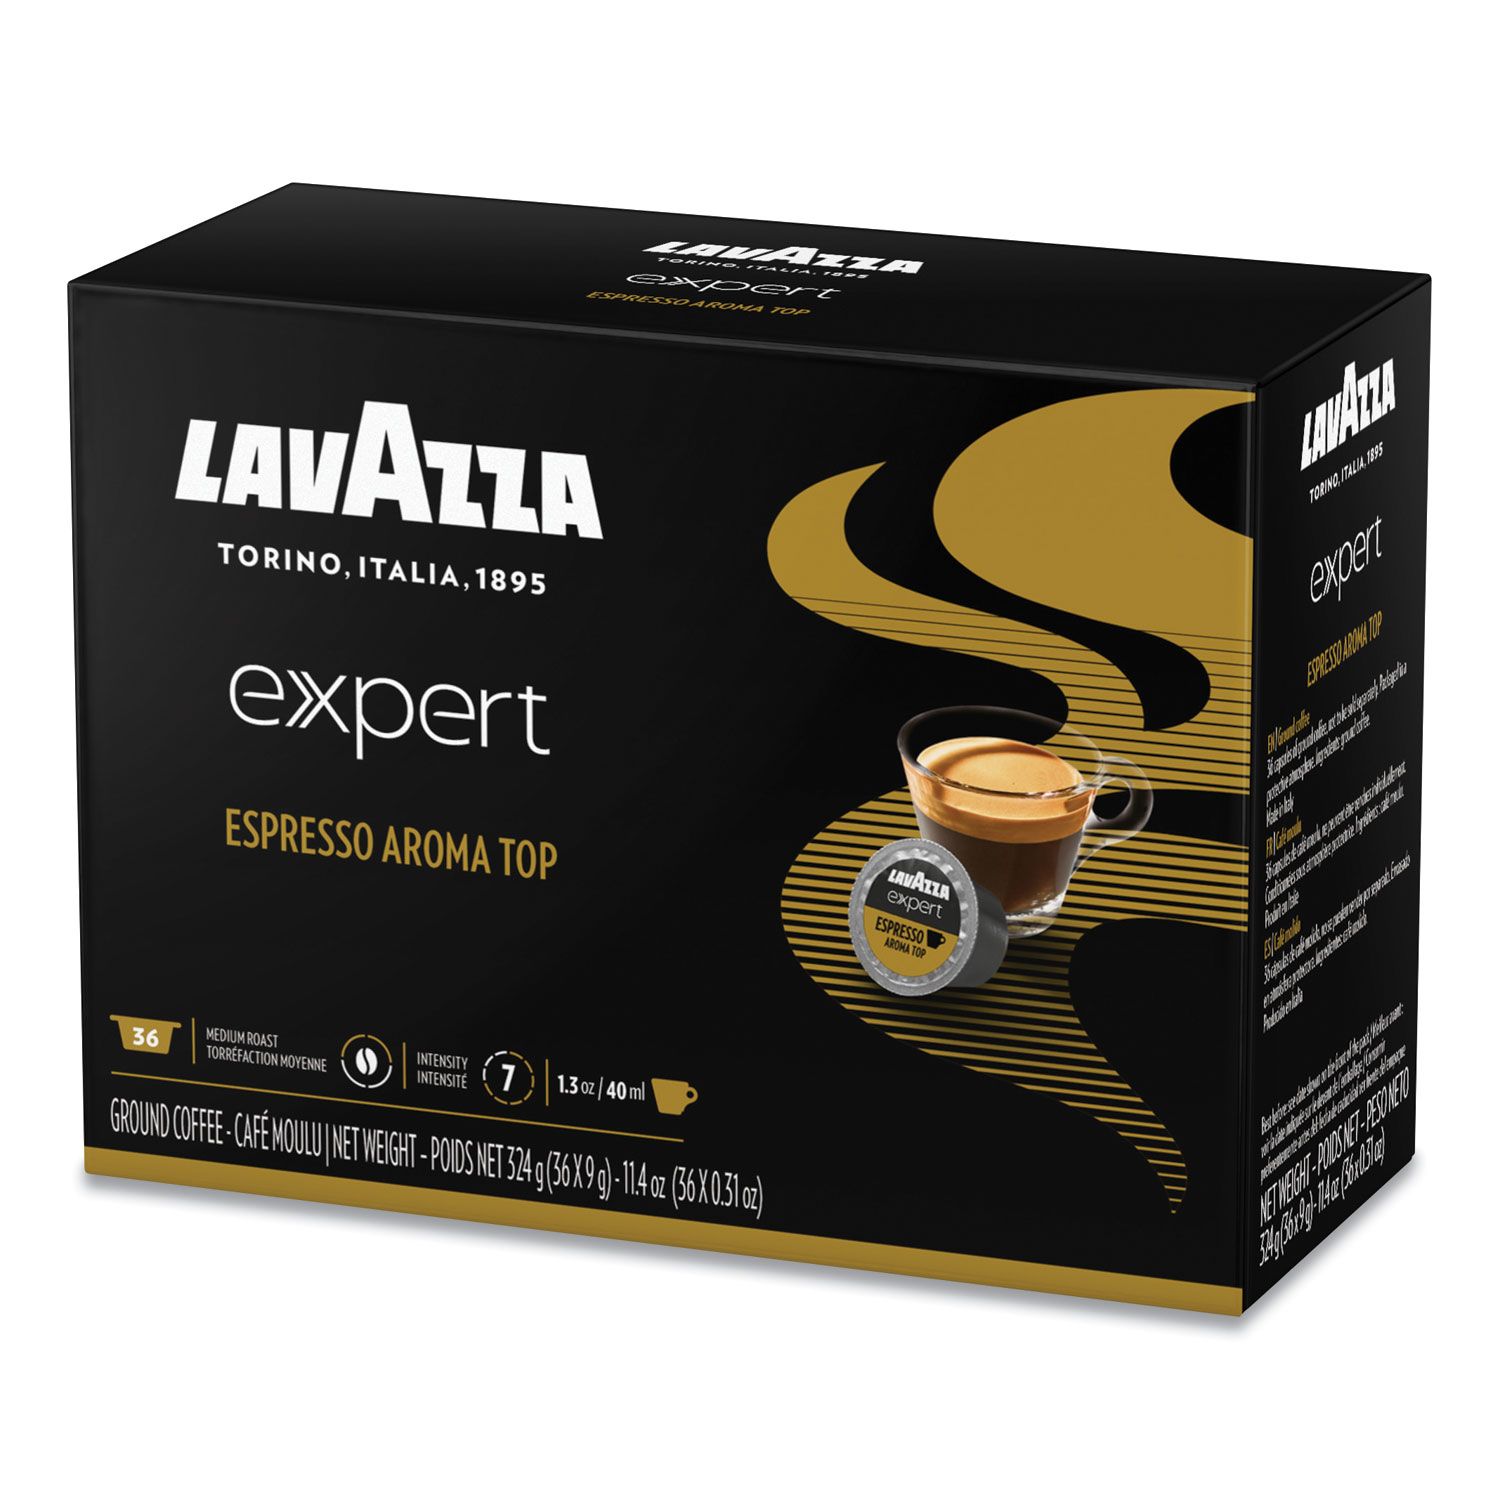  Lavazza 2261 Expert Capsules, Espresso Aroma Top, 0.31 oz, 36/Box (LAV2261) 